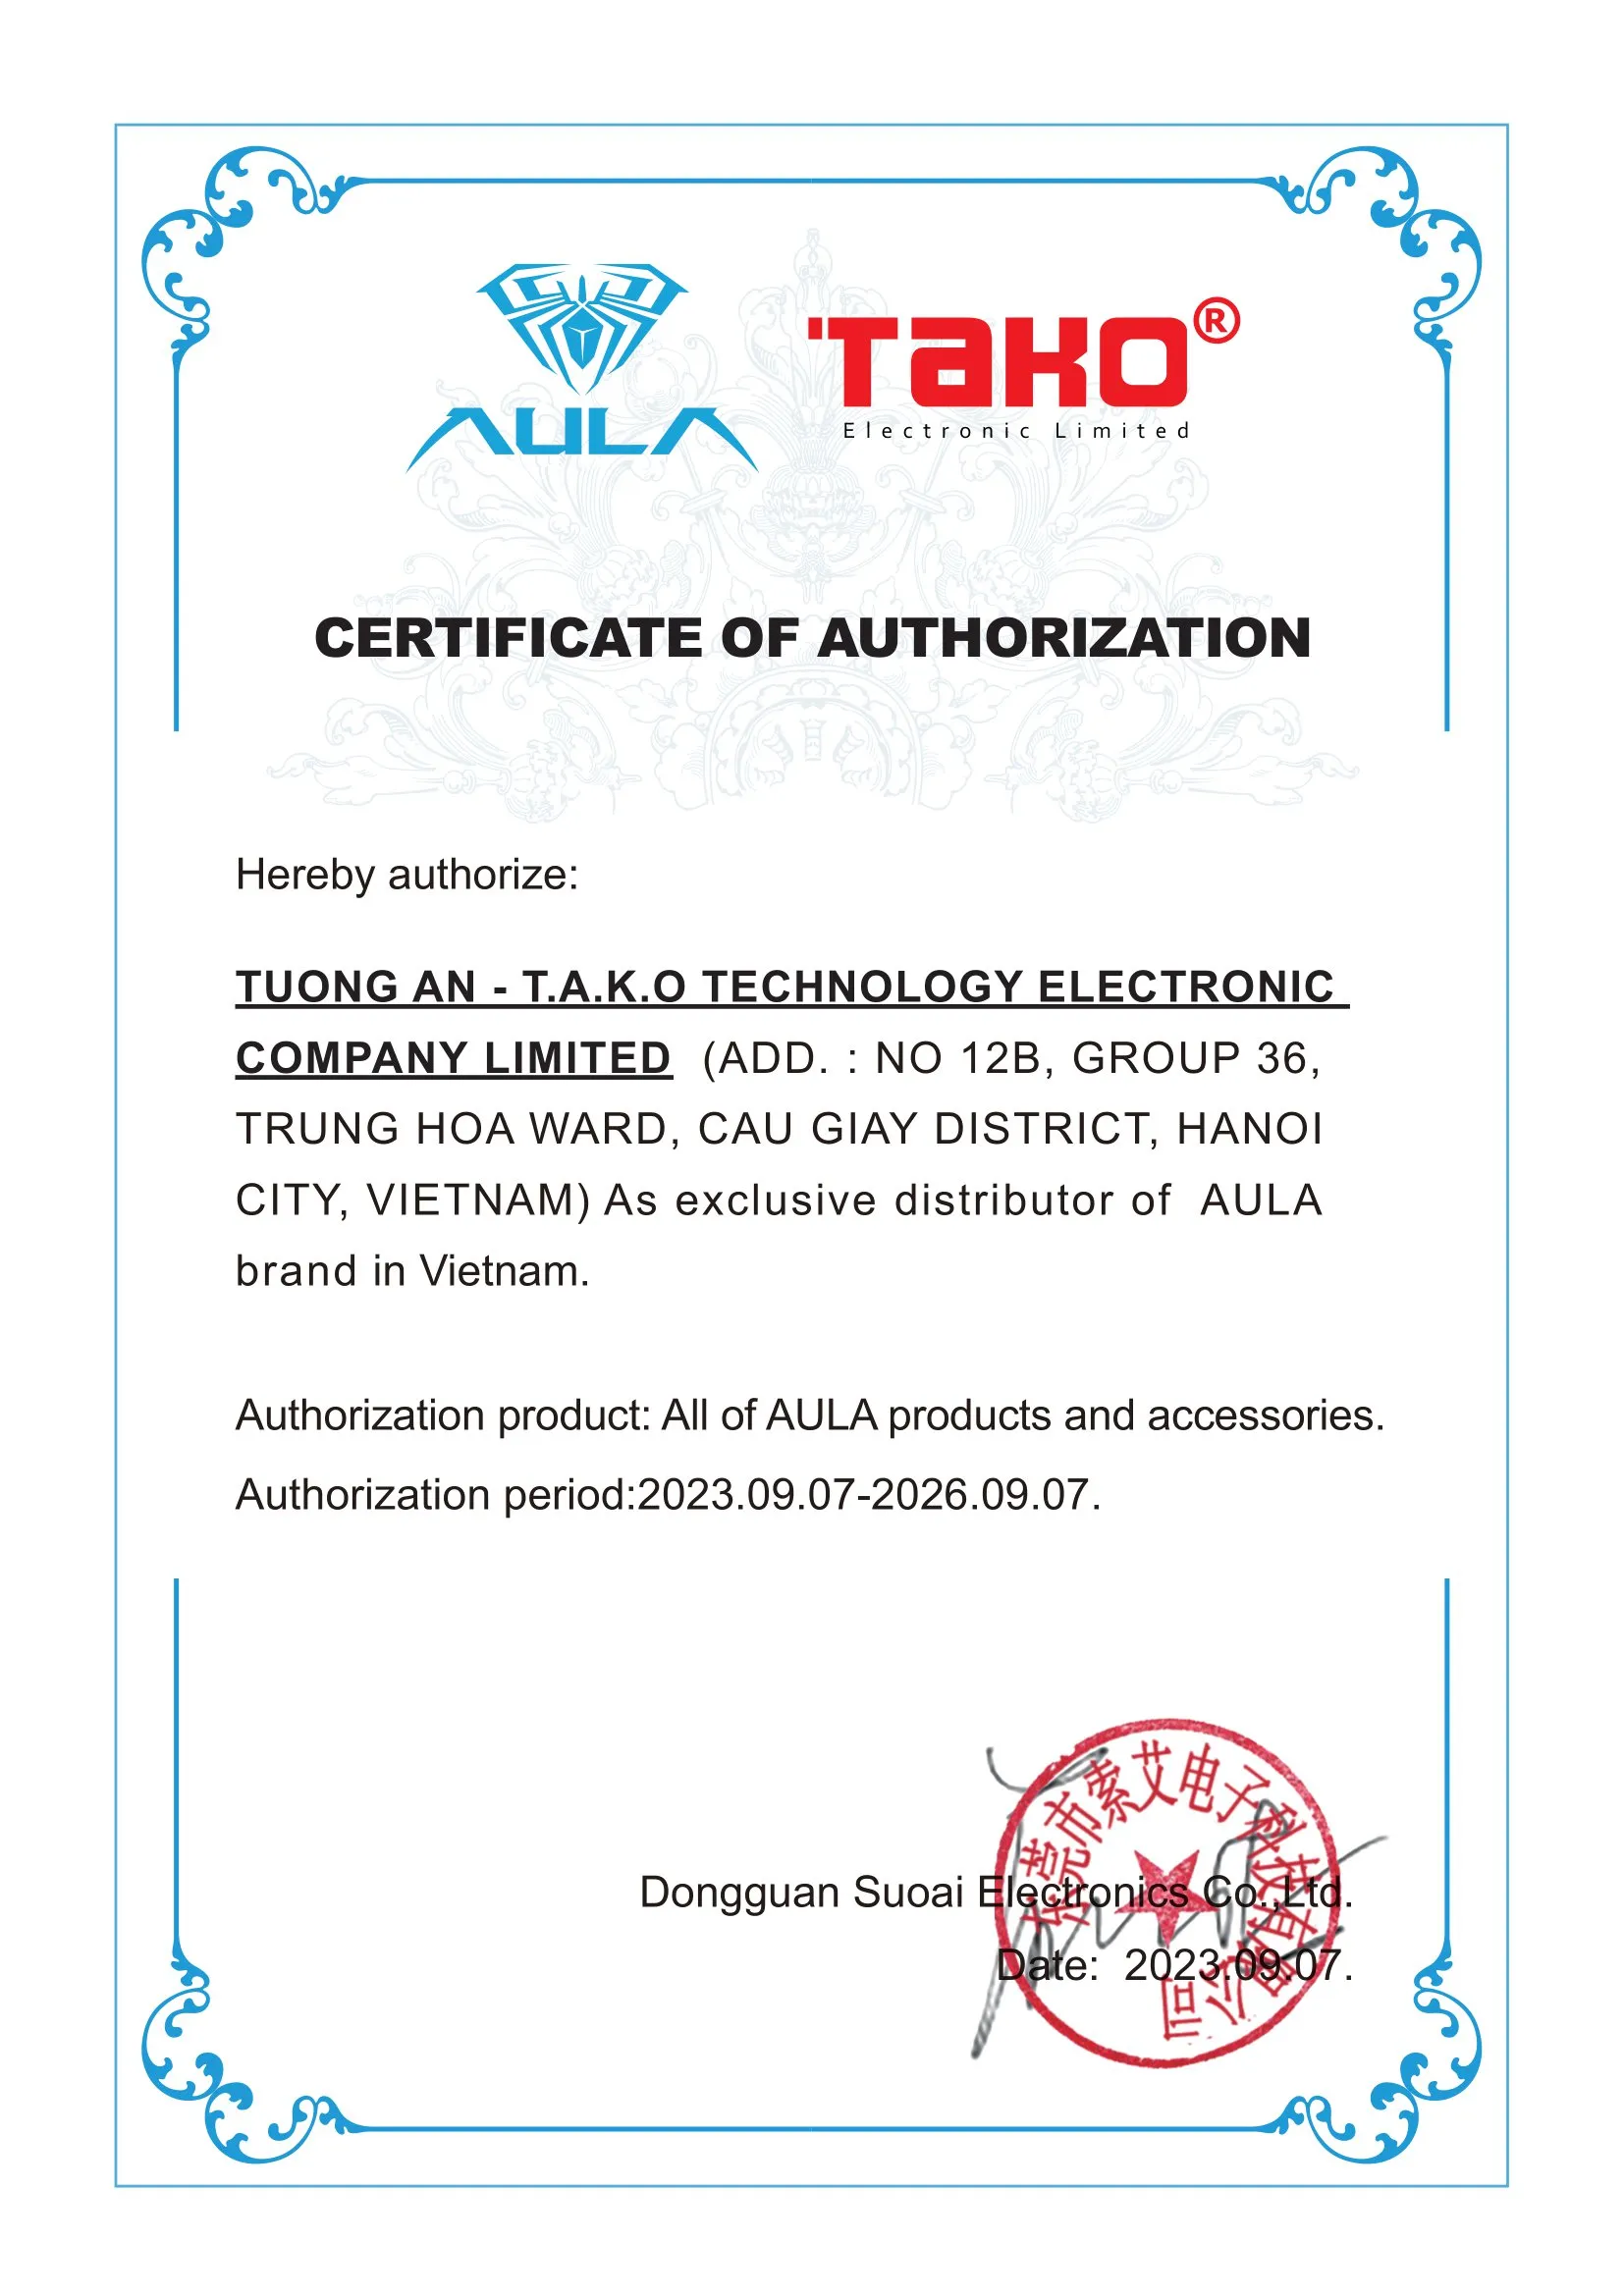 TAKO chính thức trở thành nhà phân phối độc quyền thương hiệu AULA